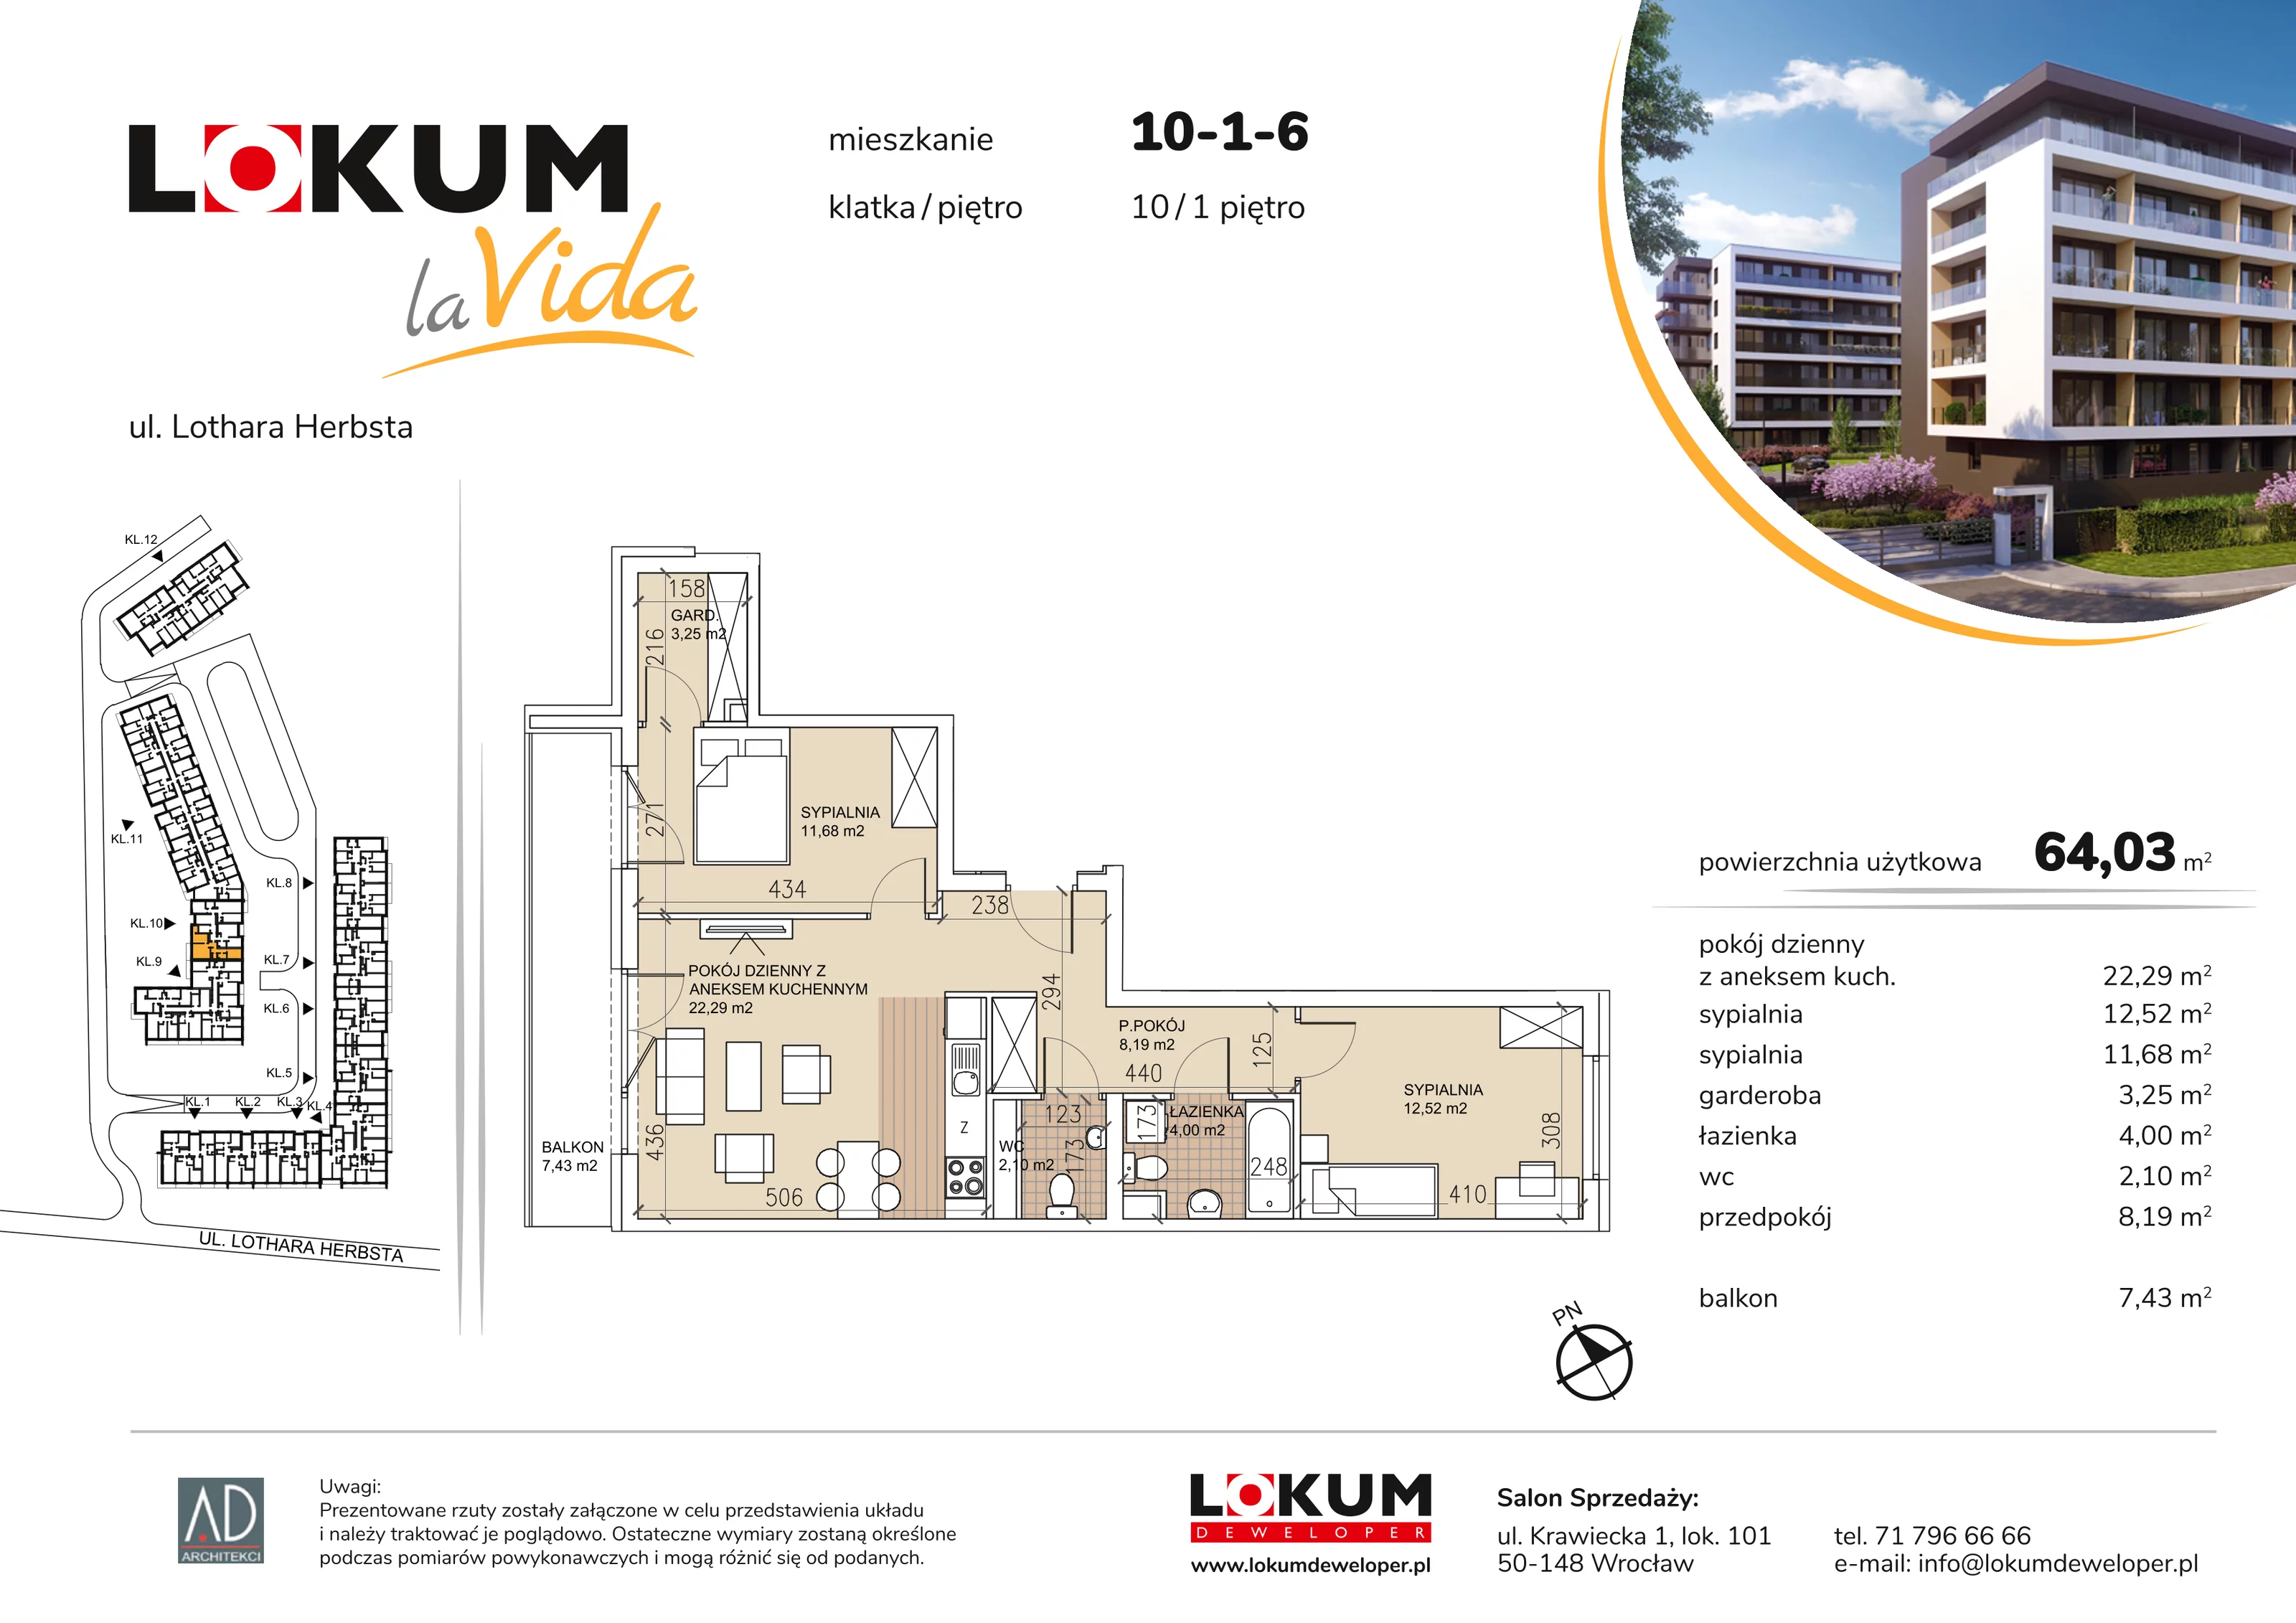 Mieszkanie 64,03 m², piętro 1, oferta nr 10-1-6, Lokum la Vida, Wrocław, Sołtysowice, ul. Lothara Herbsta